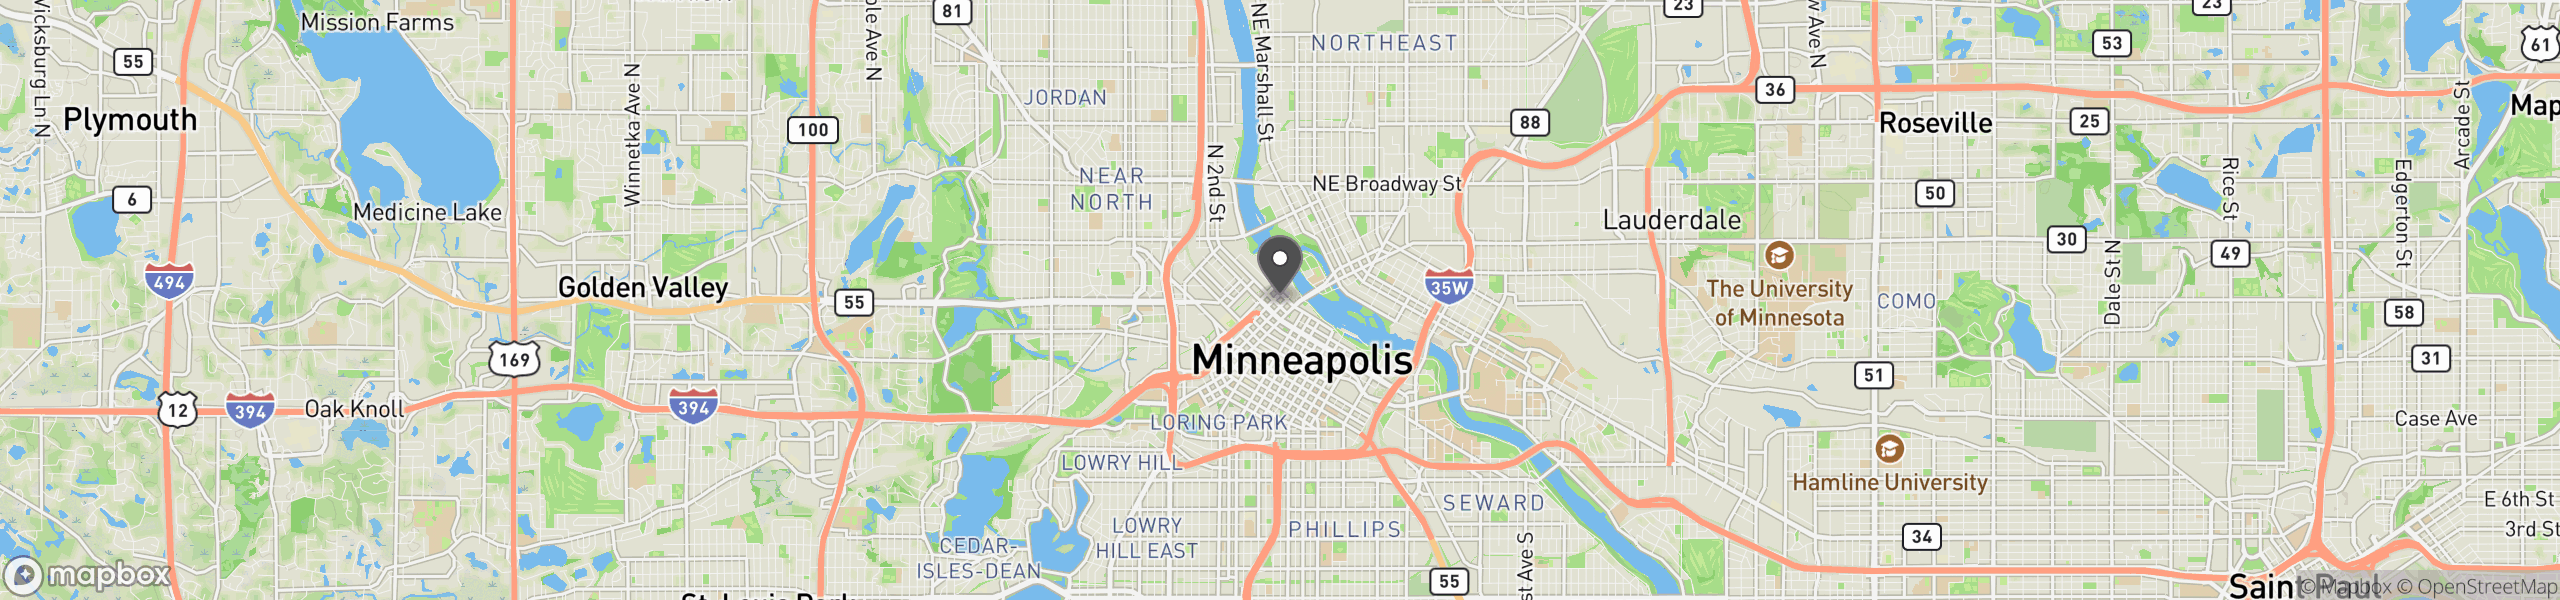 Minneapolis, MN 55401